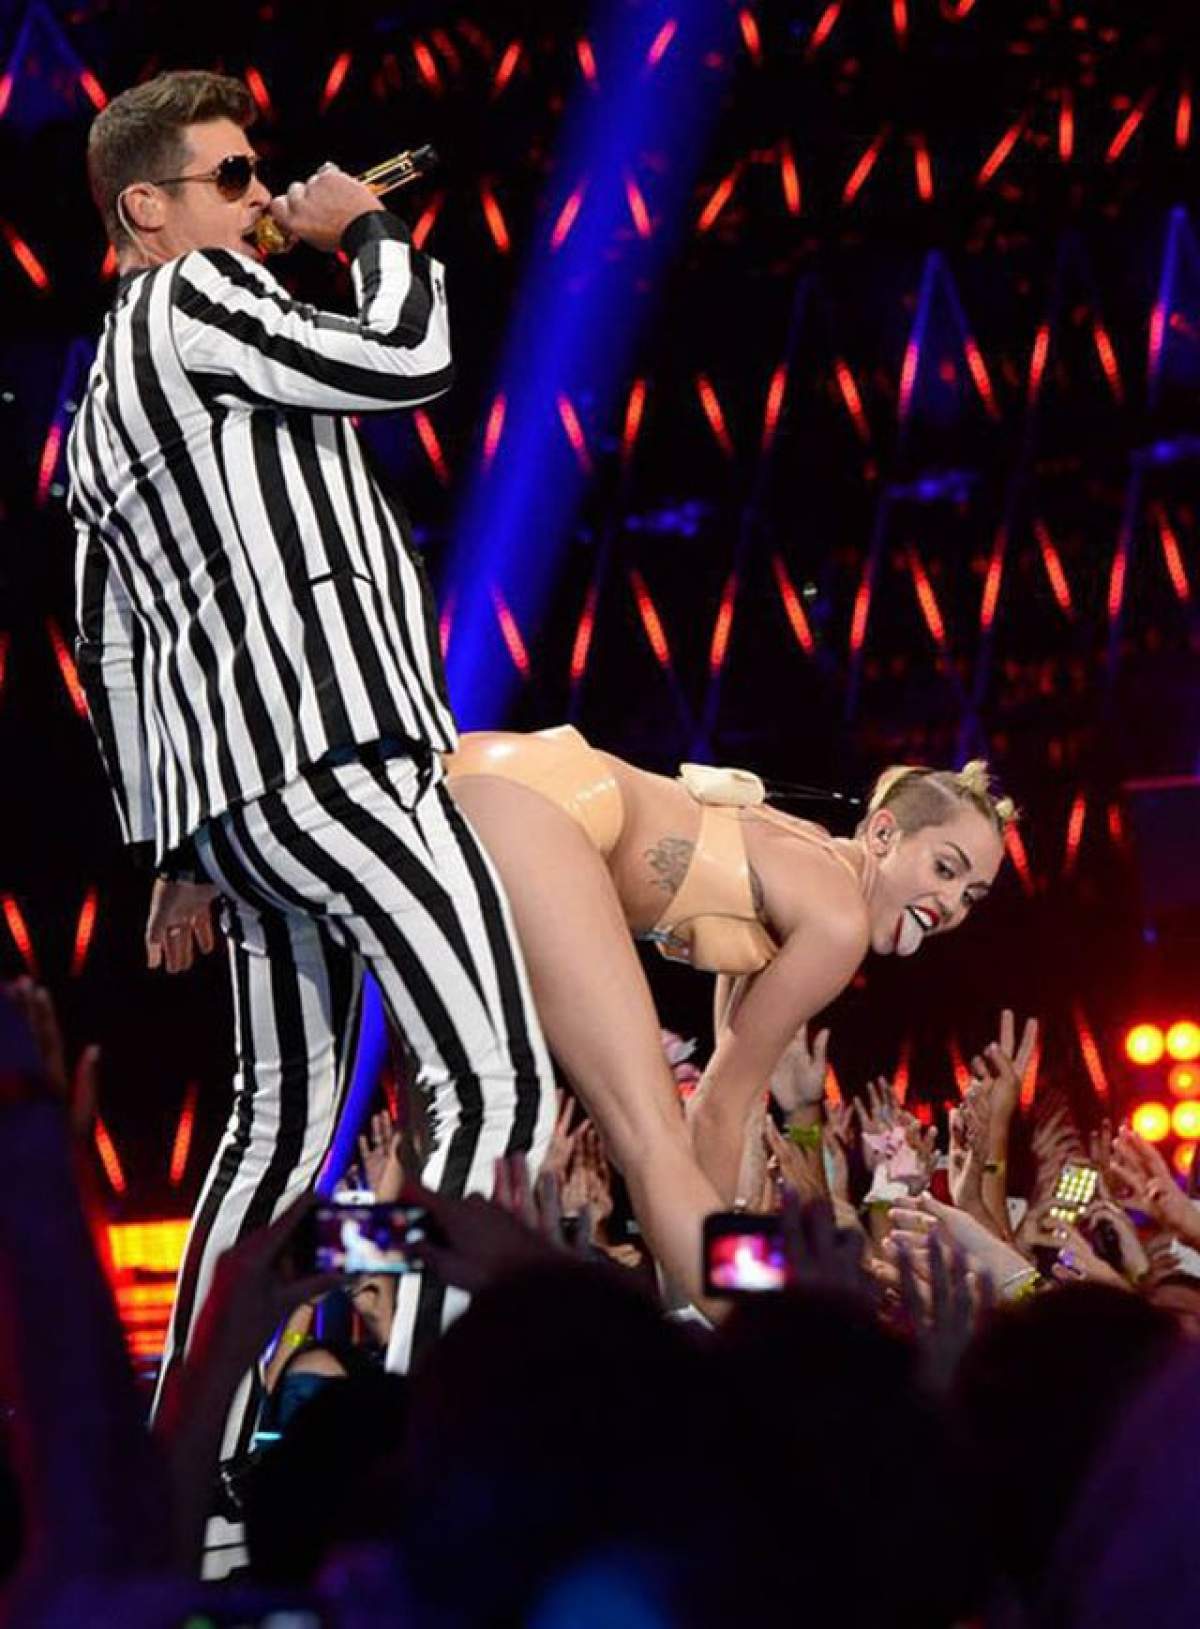 Gest şocant! Miley Cyrus se ţine de "păsărică"!